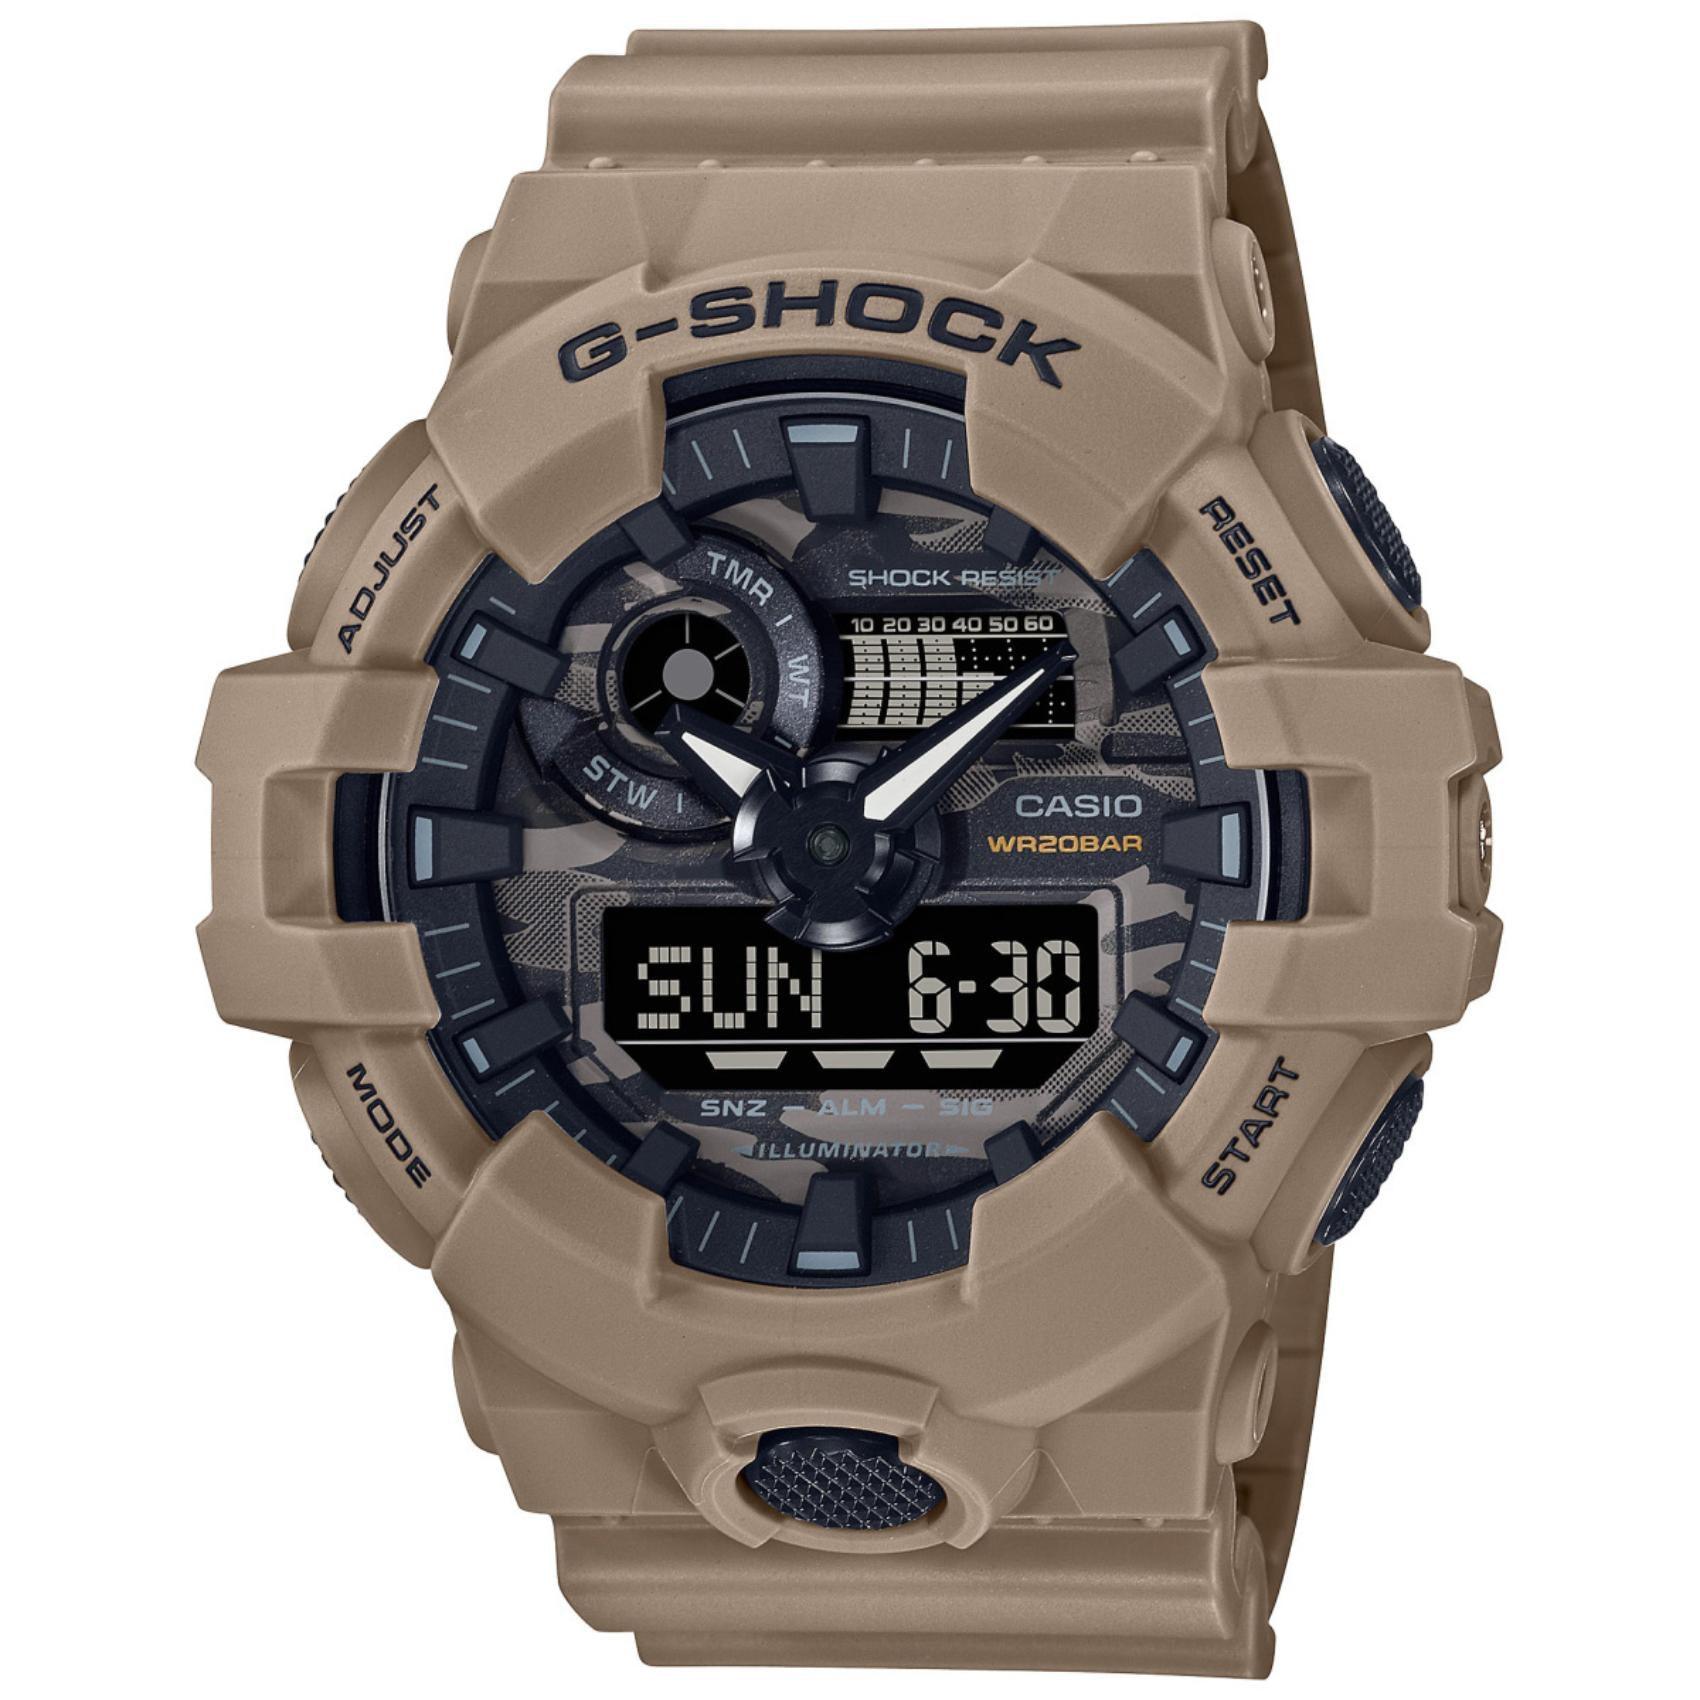 Καταδυτικό ρολόι χρονογράφος Casio G-Shock GA-700CA-5AER με ανοιχτό καφέ καουτσούκ λουράκι, μαύρο καντράν με camo λεπτομέρειες και στεγανότητα 20ATM-200Μ.